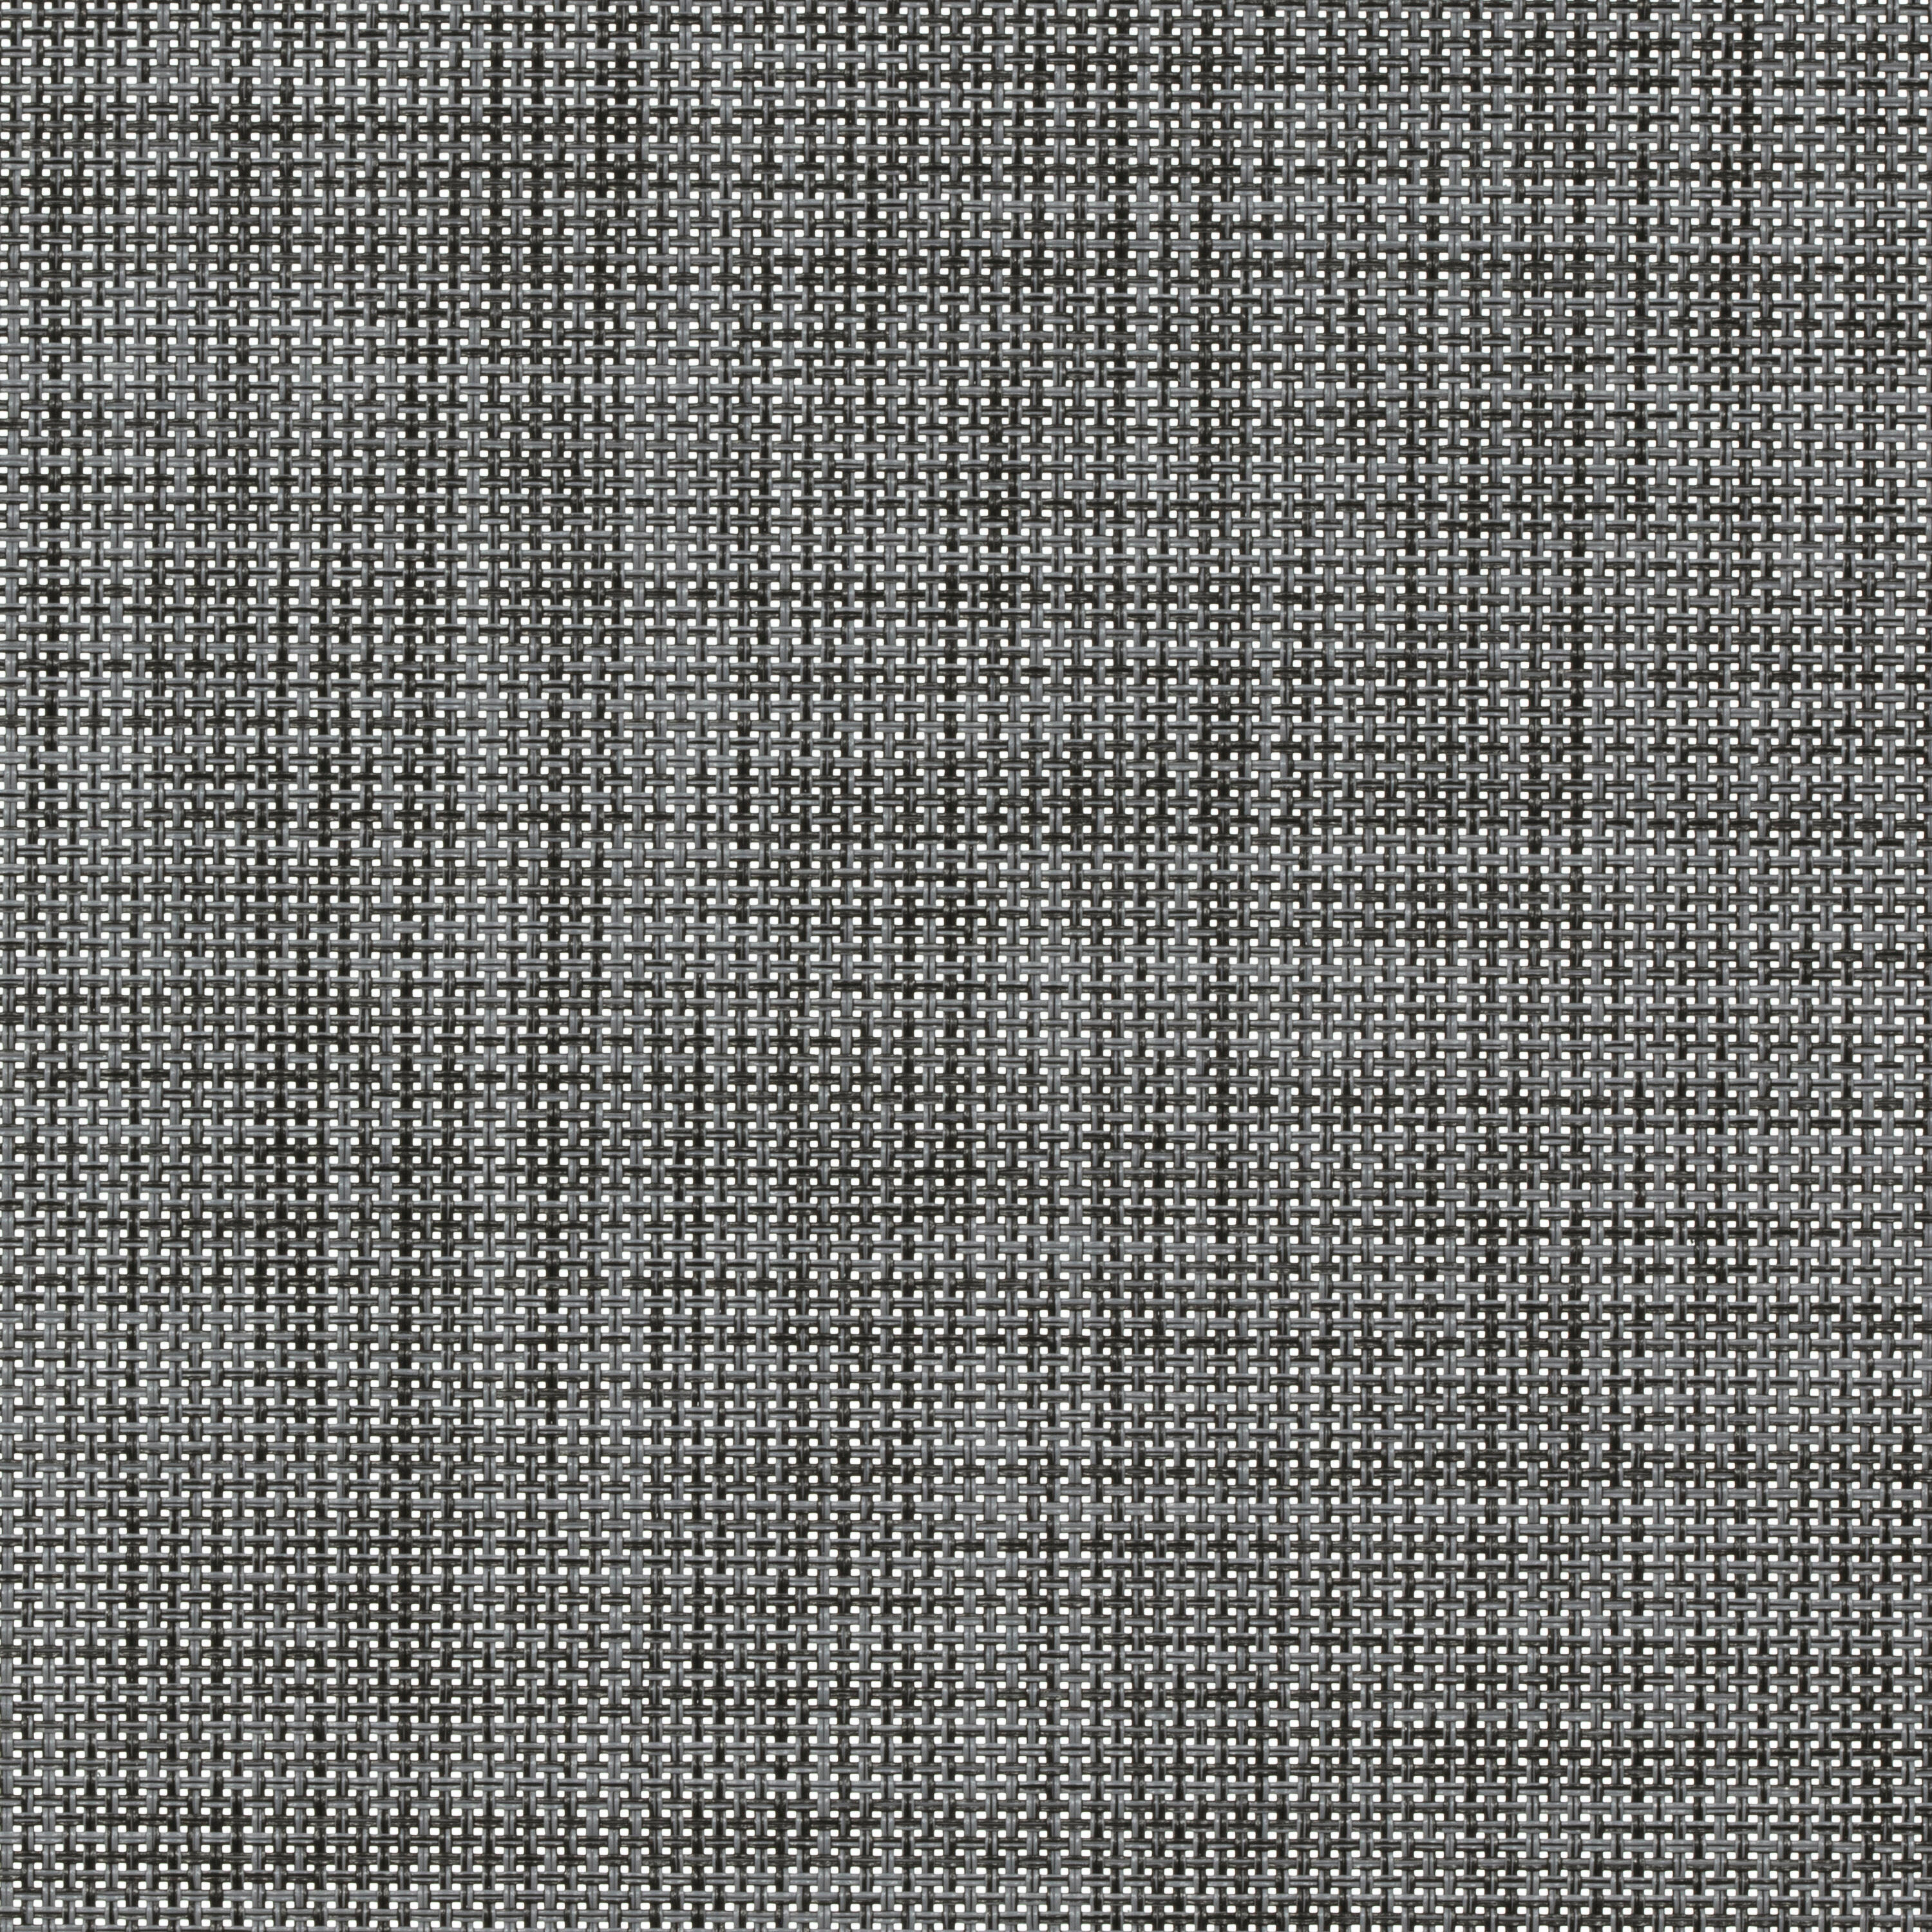 Tessuto per tende a rullo filtrante INSPIRE Puebla grigio / argento 50.8 x 190 cm - 2